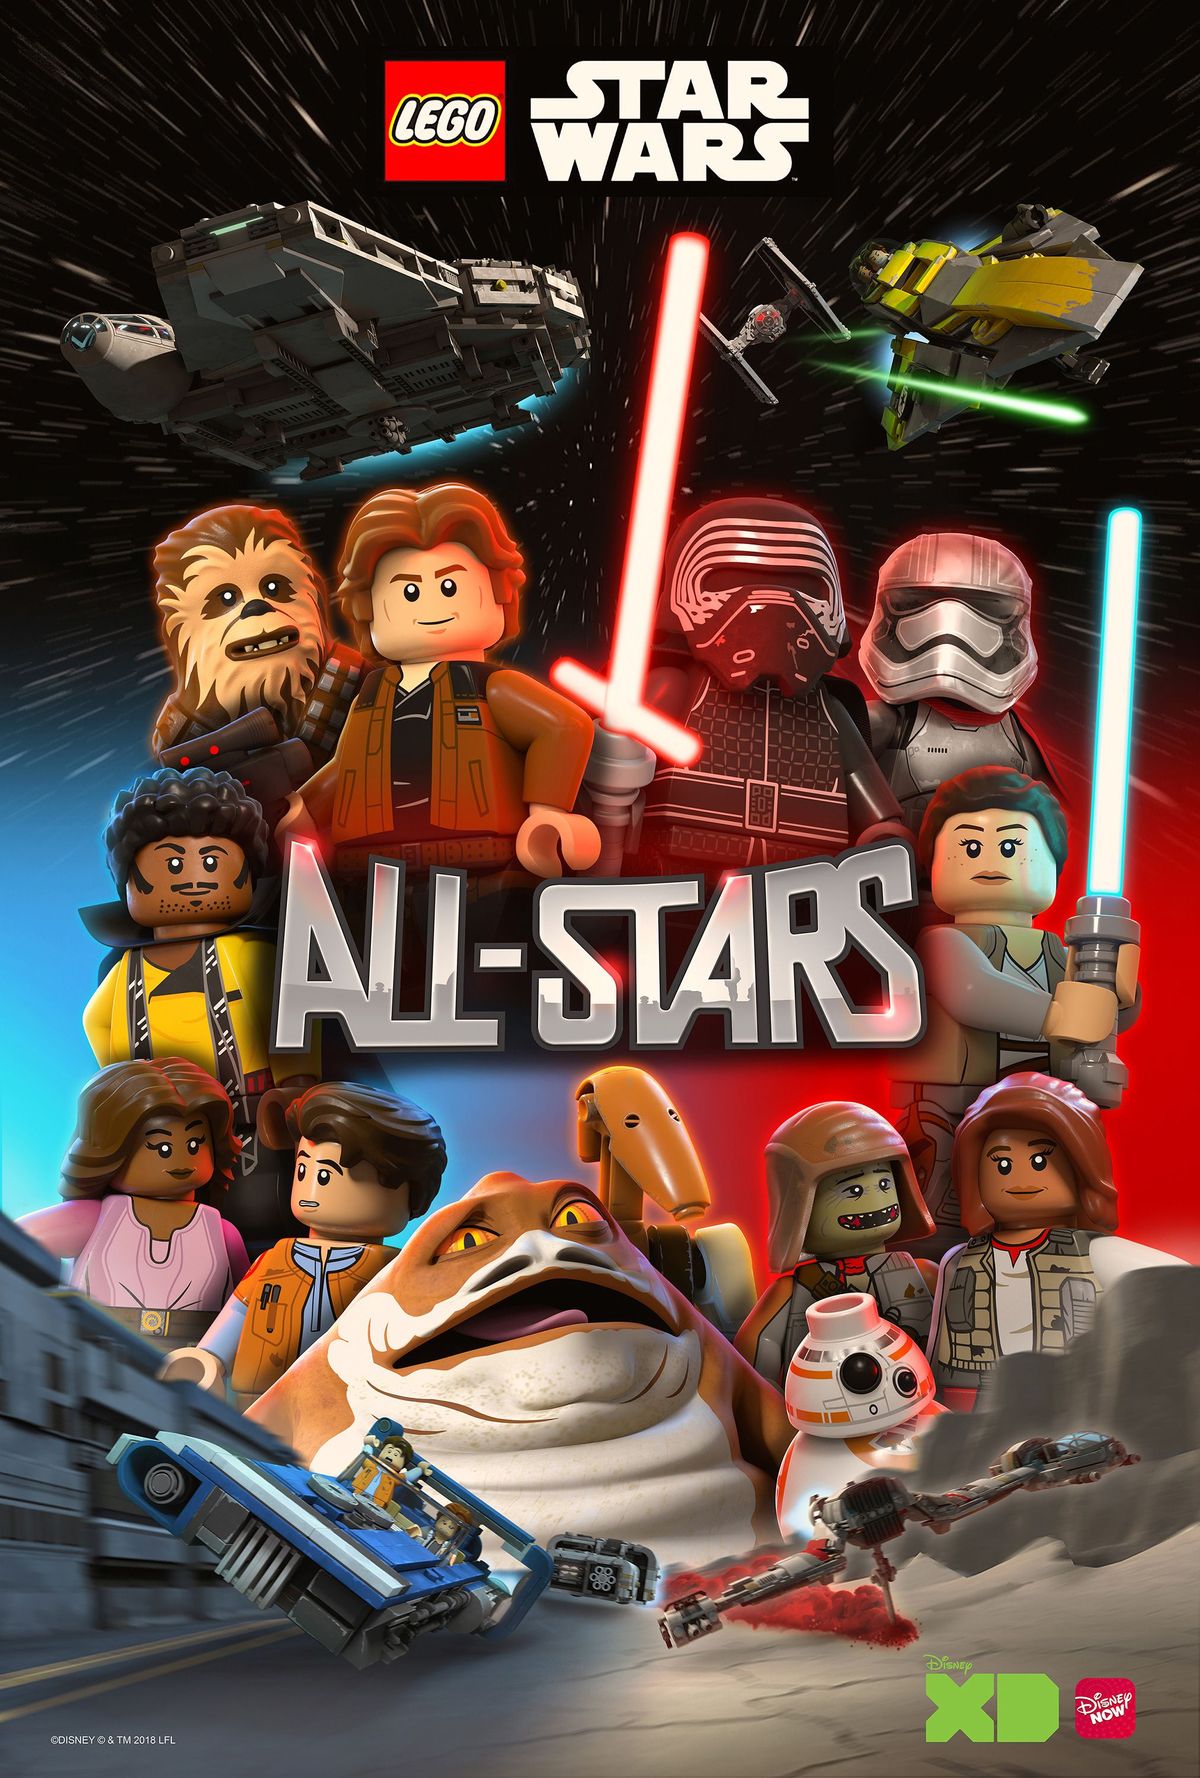 LEGO Star Wars ใหม่: ซีรีส์แอนิเมชั่น All-Stars ที่ครอบคลุมทุกยุคทุกสมัยของแฟรนไชส์